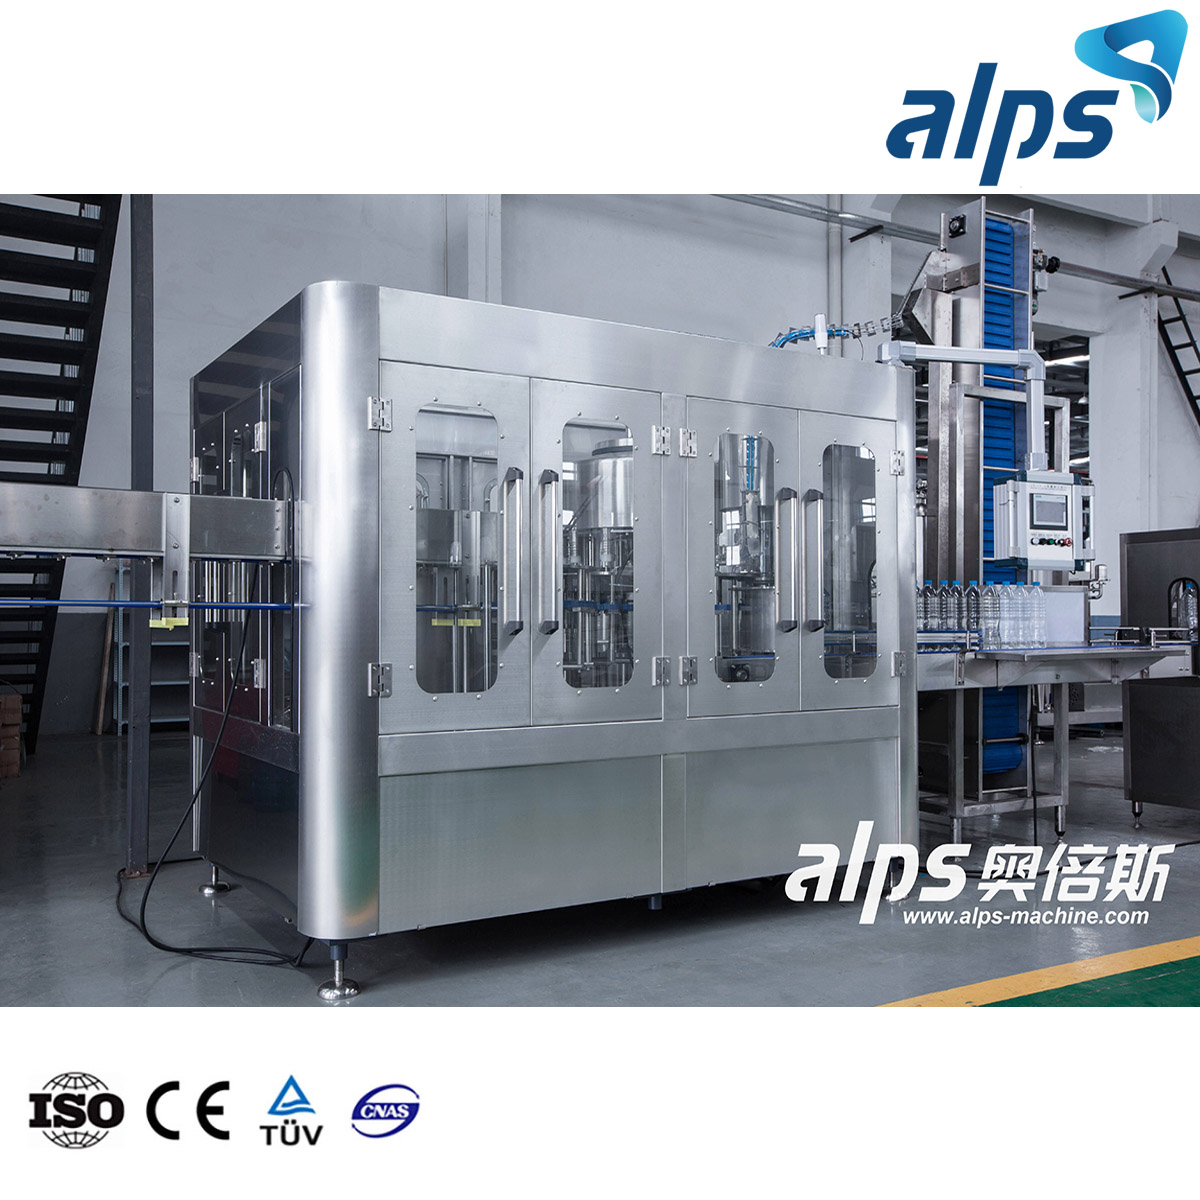 2022 Fabricant de machines de remplissage de bouteilles Alps Machine de remplissage d'eau 3 en 1 12 Machine de remplissage de seau de yaourt